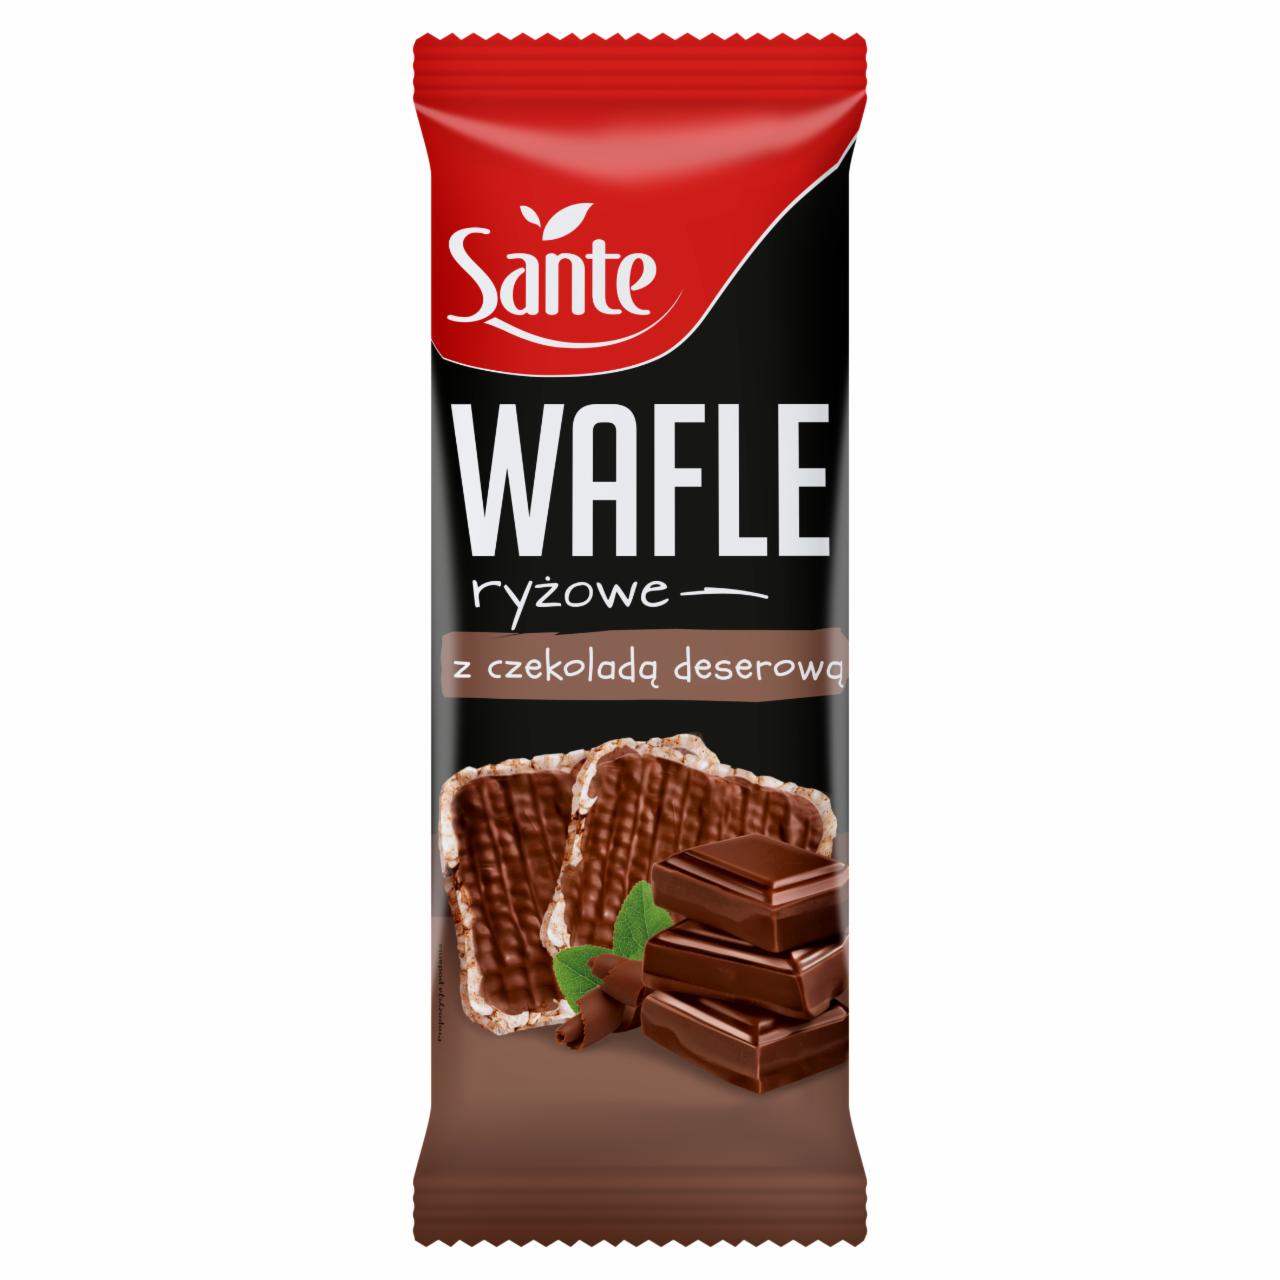 Zdjęcia - Wafle ryżowe z czekoladą deserową Sante